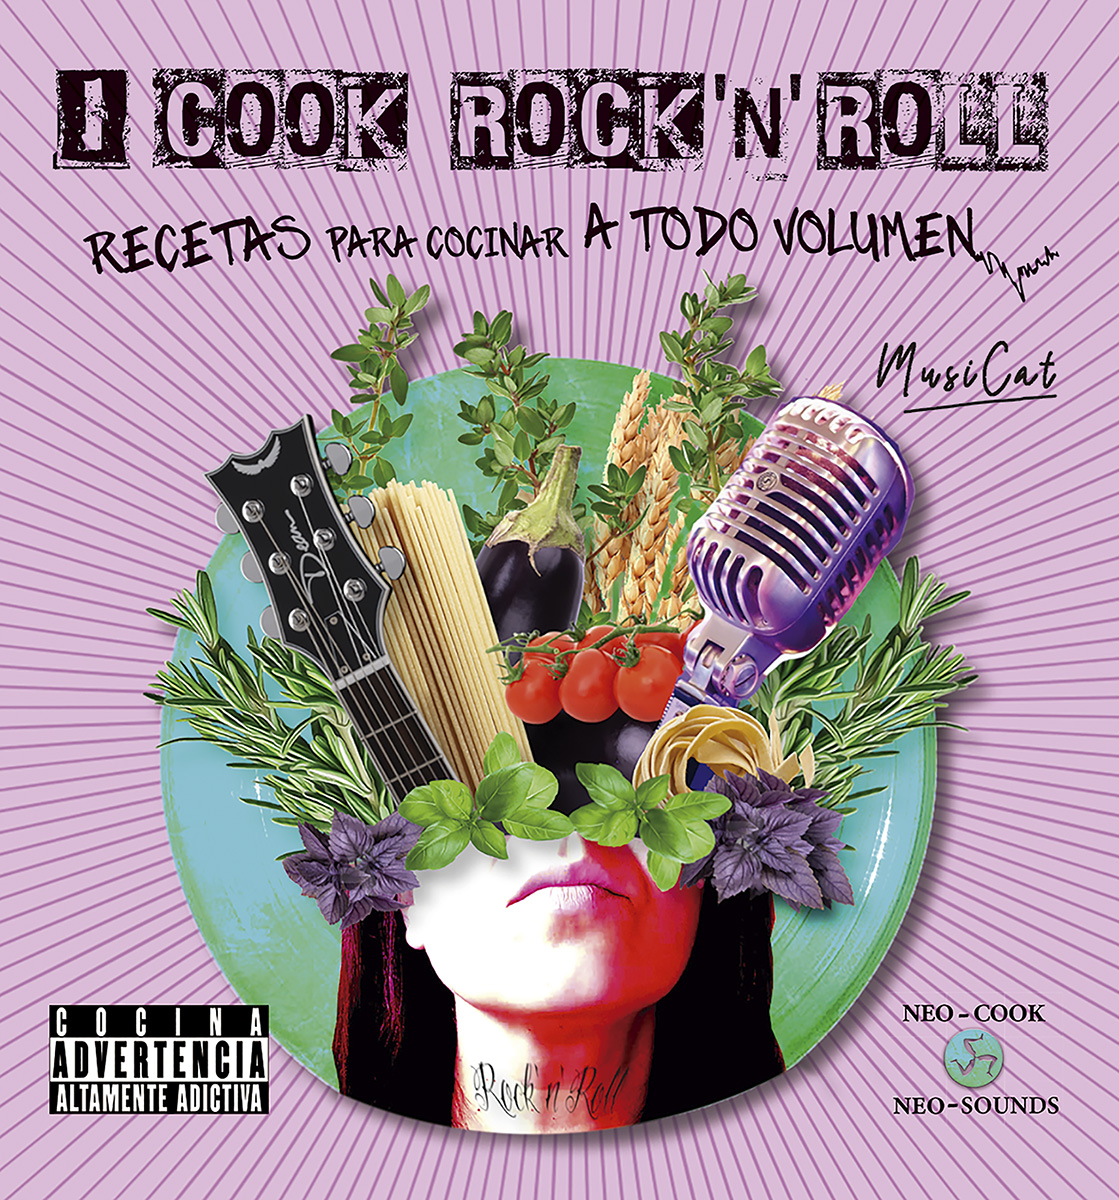 
            I cook rock 'n' roll